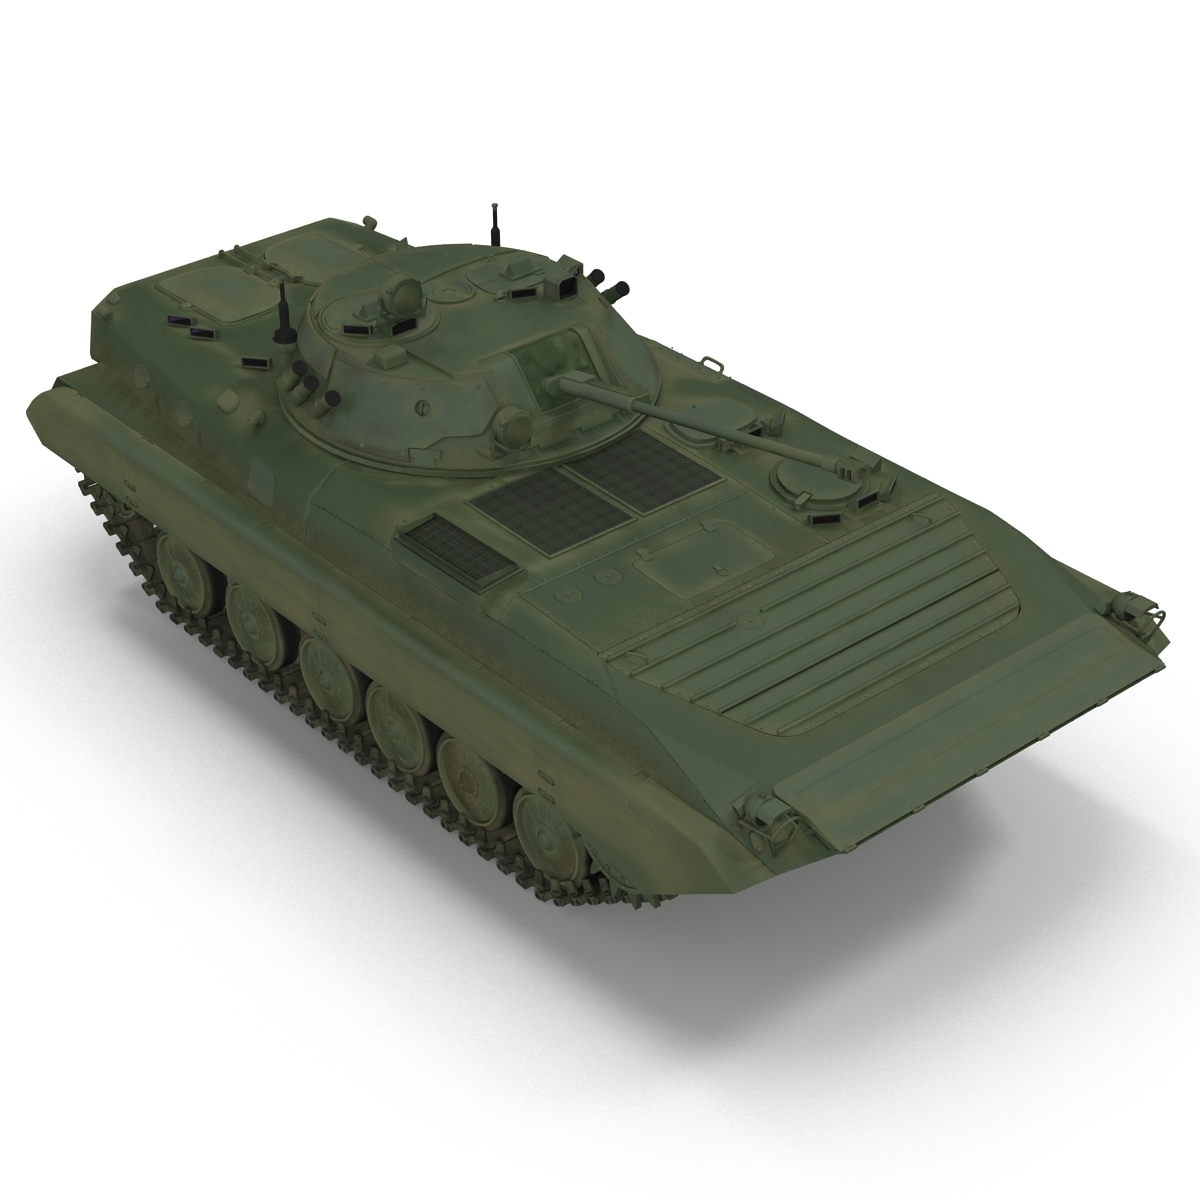 步兵战车俄罗斯bmp-23d模型